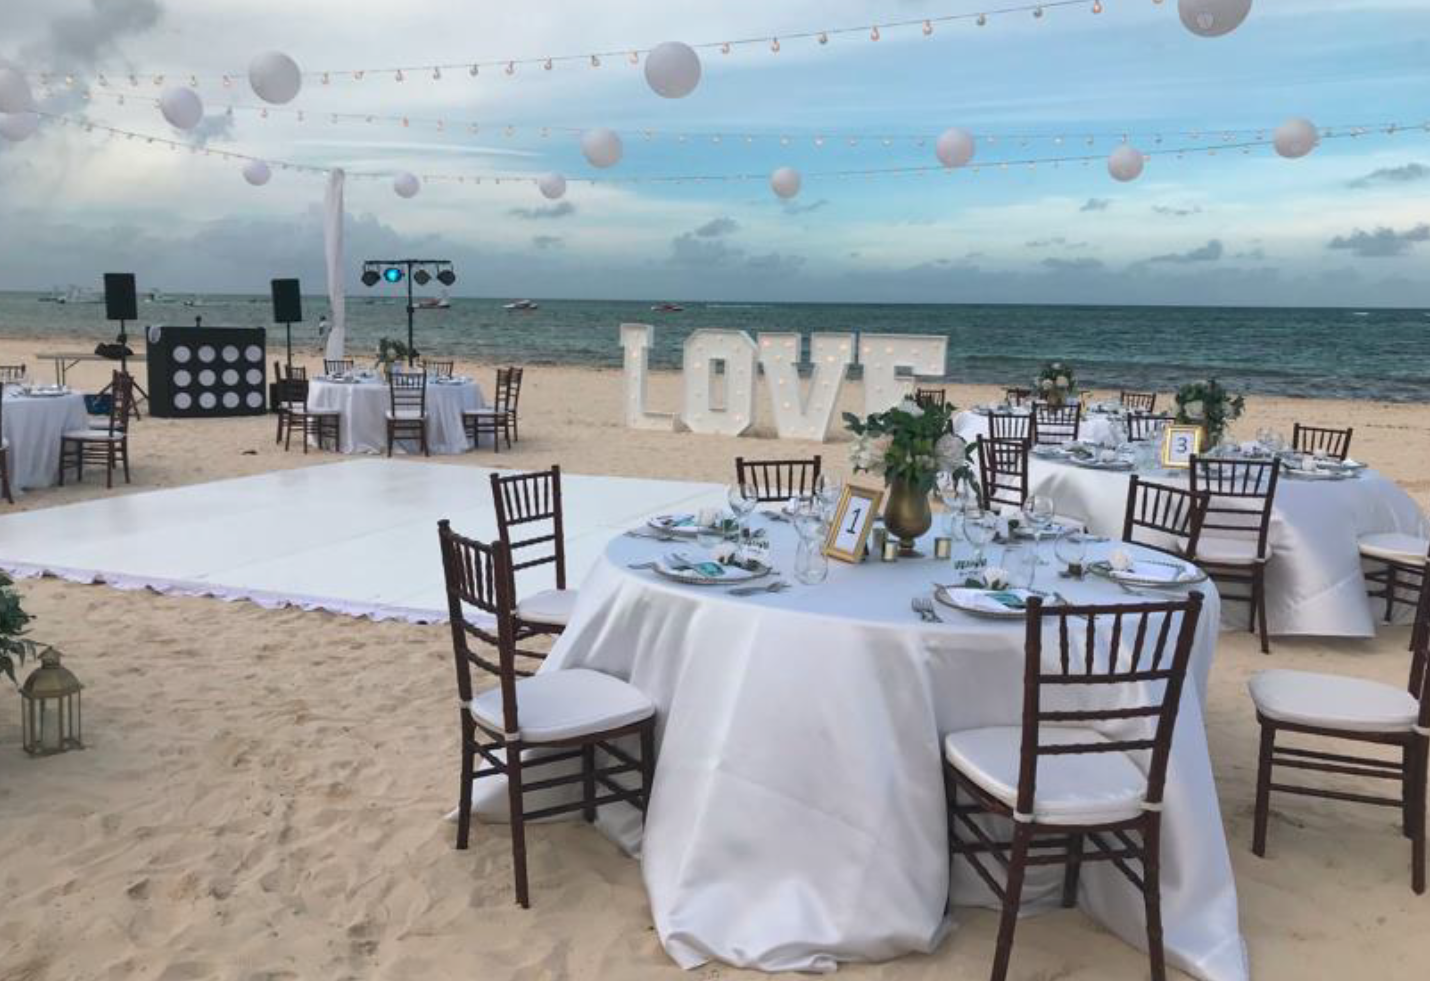 Dreams Royal Beach Wedding Reception on Beach.png